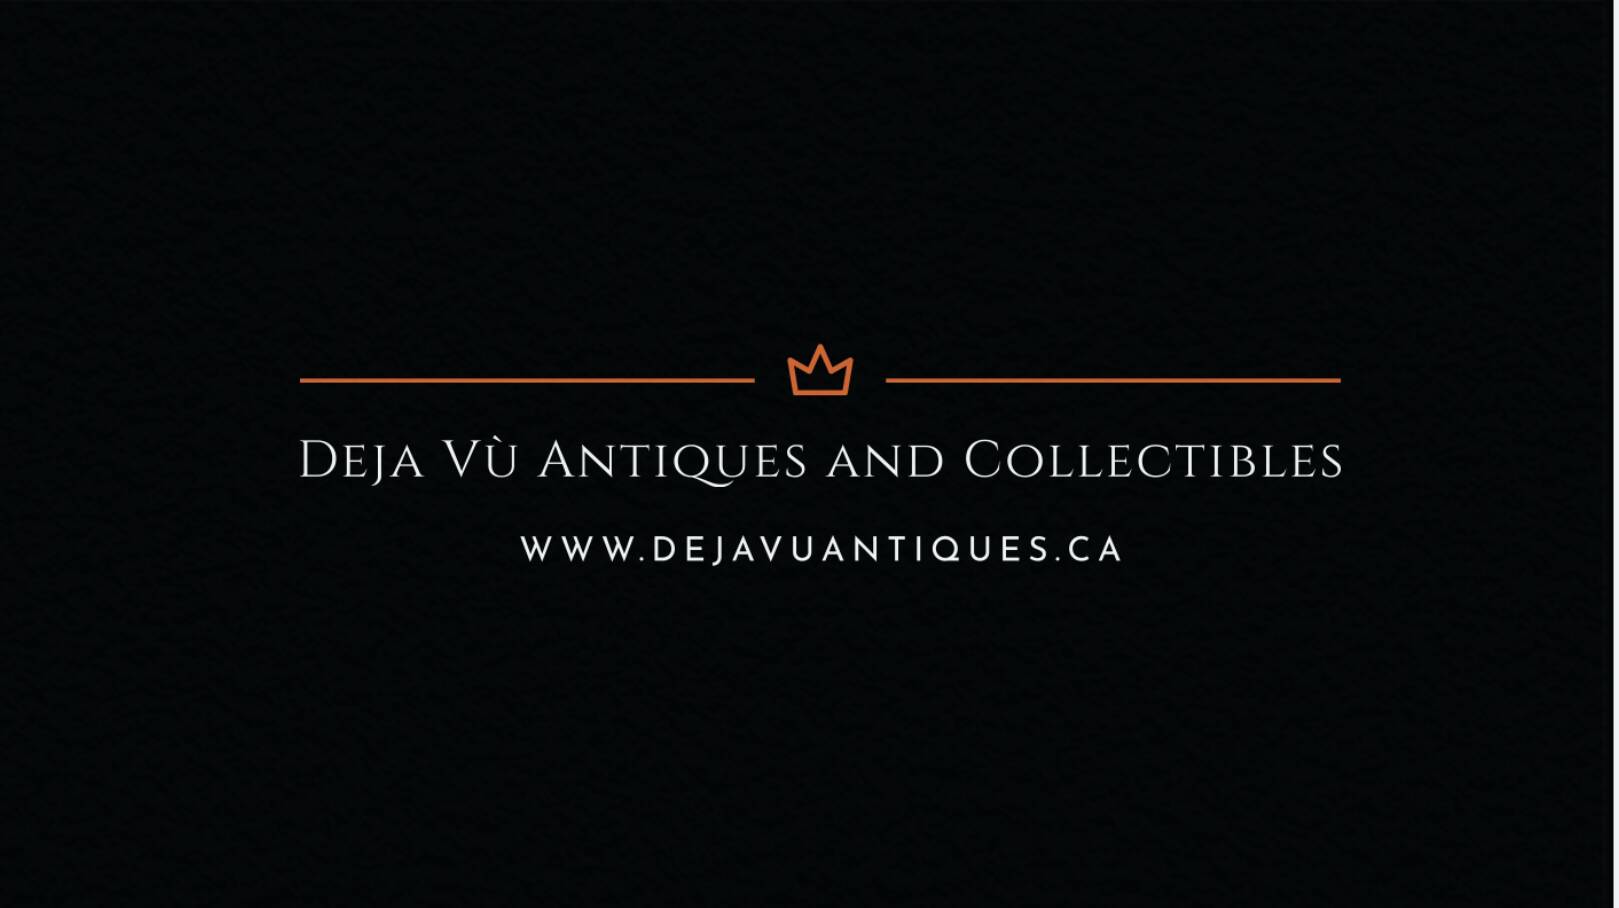 Deja vu Antiques and Collectibles